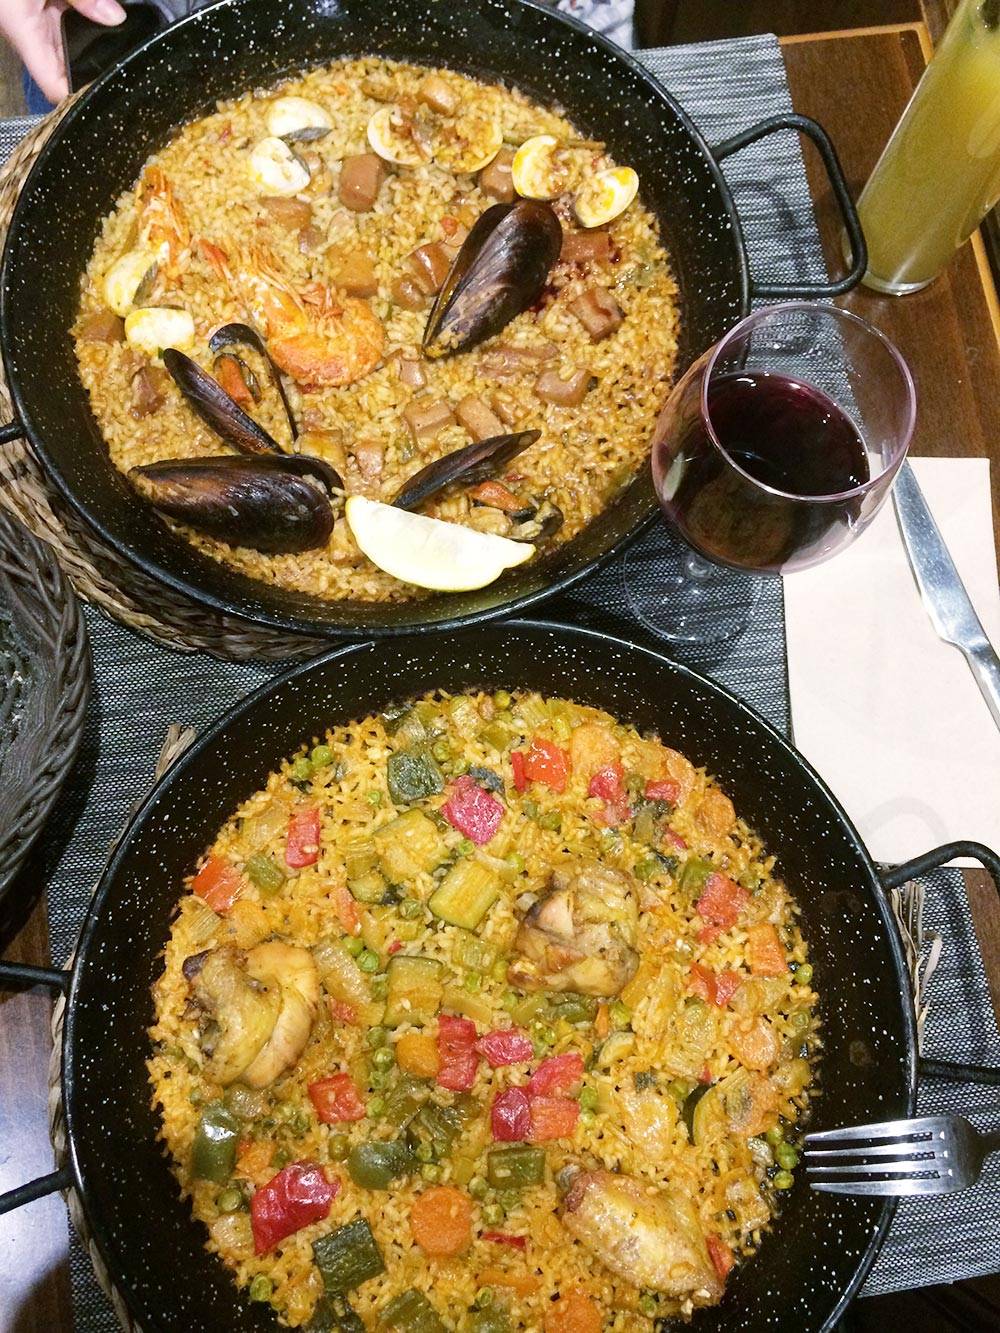 Нам особенно запомнилась еда в Барселоне. Там в каждом ресторане подают свежие морепродукты и изумительно готовят паэлью. Порции везде большие